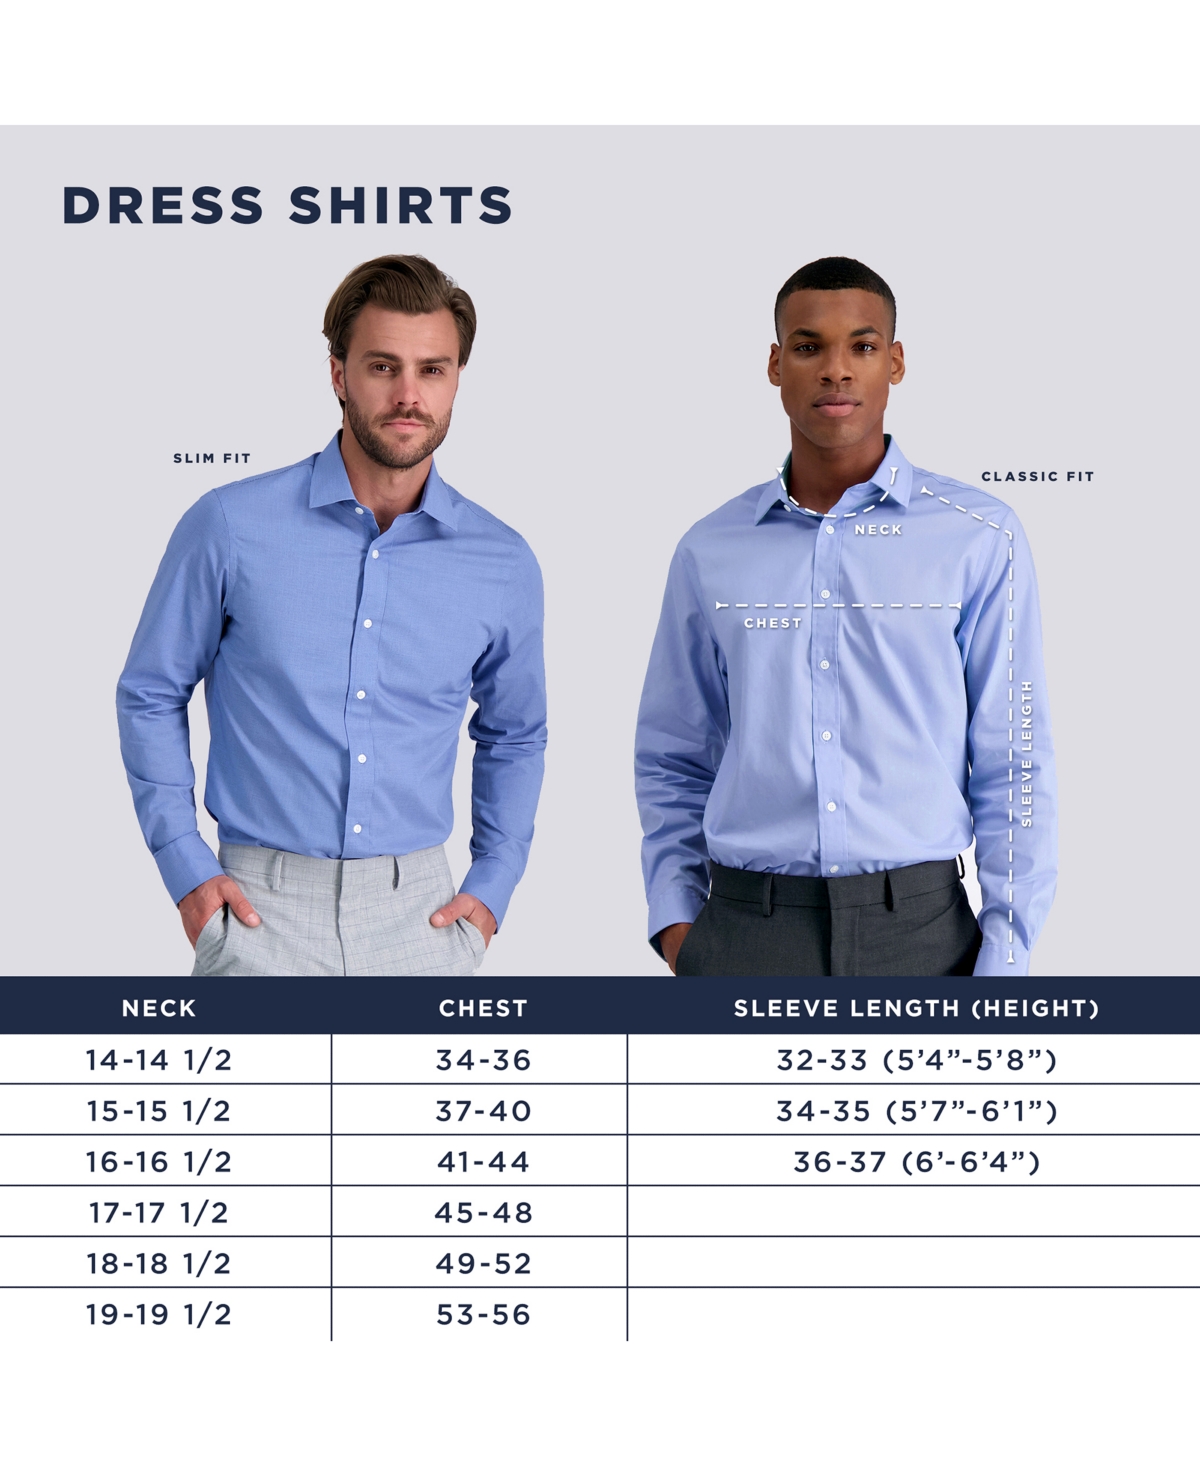 Shop Haggar Men's Premium Comfort Slim Fit Dress Shirt In Tonal Blue Check